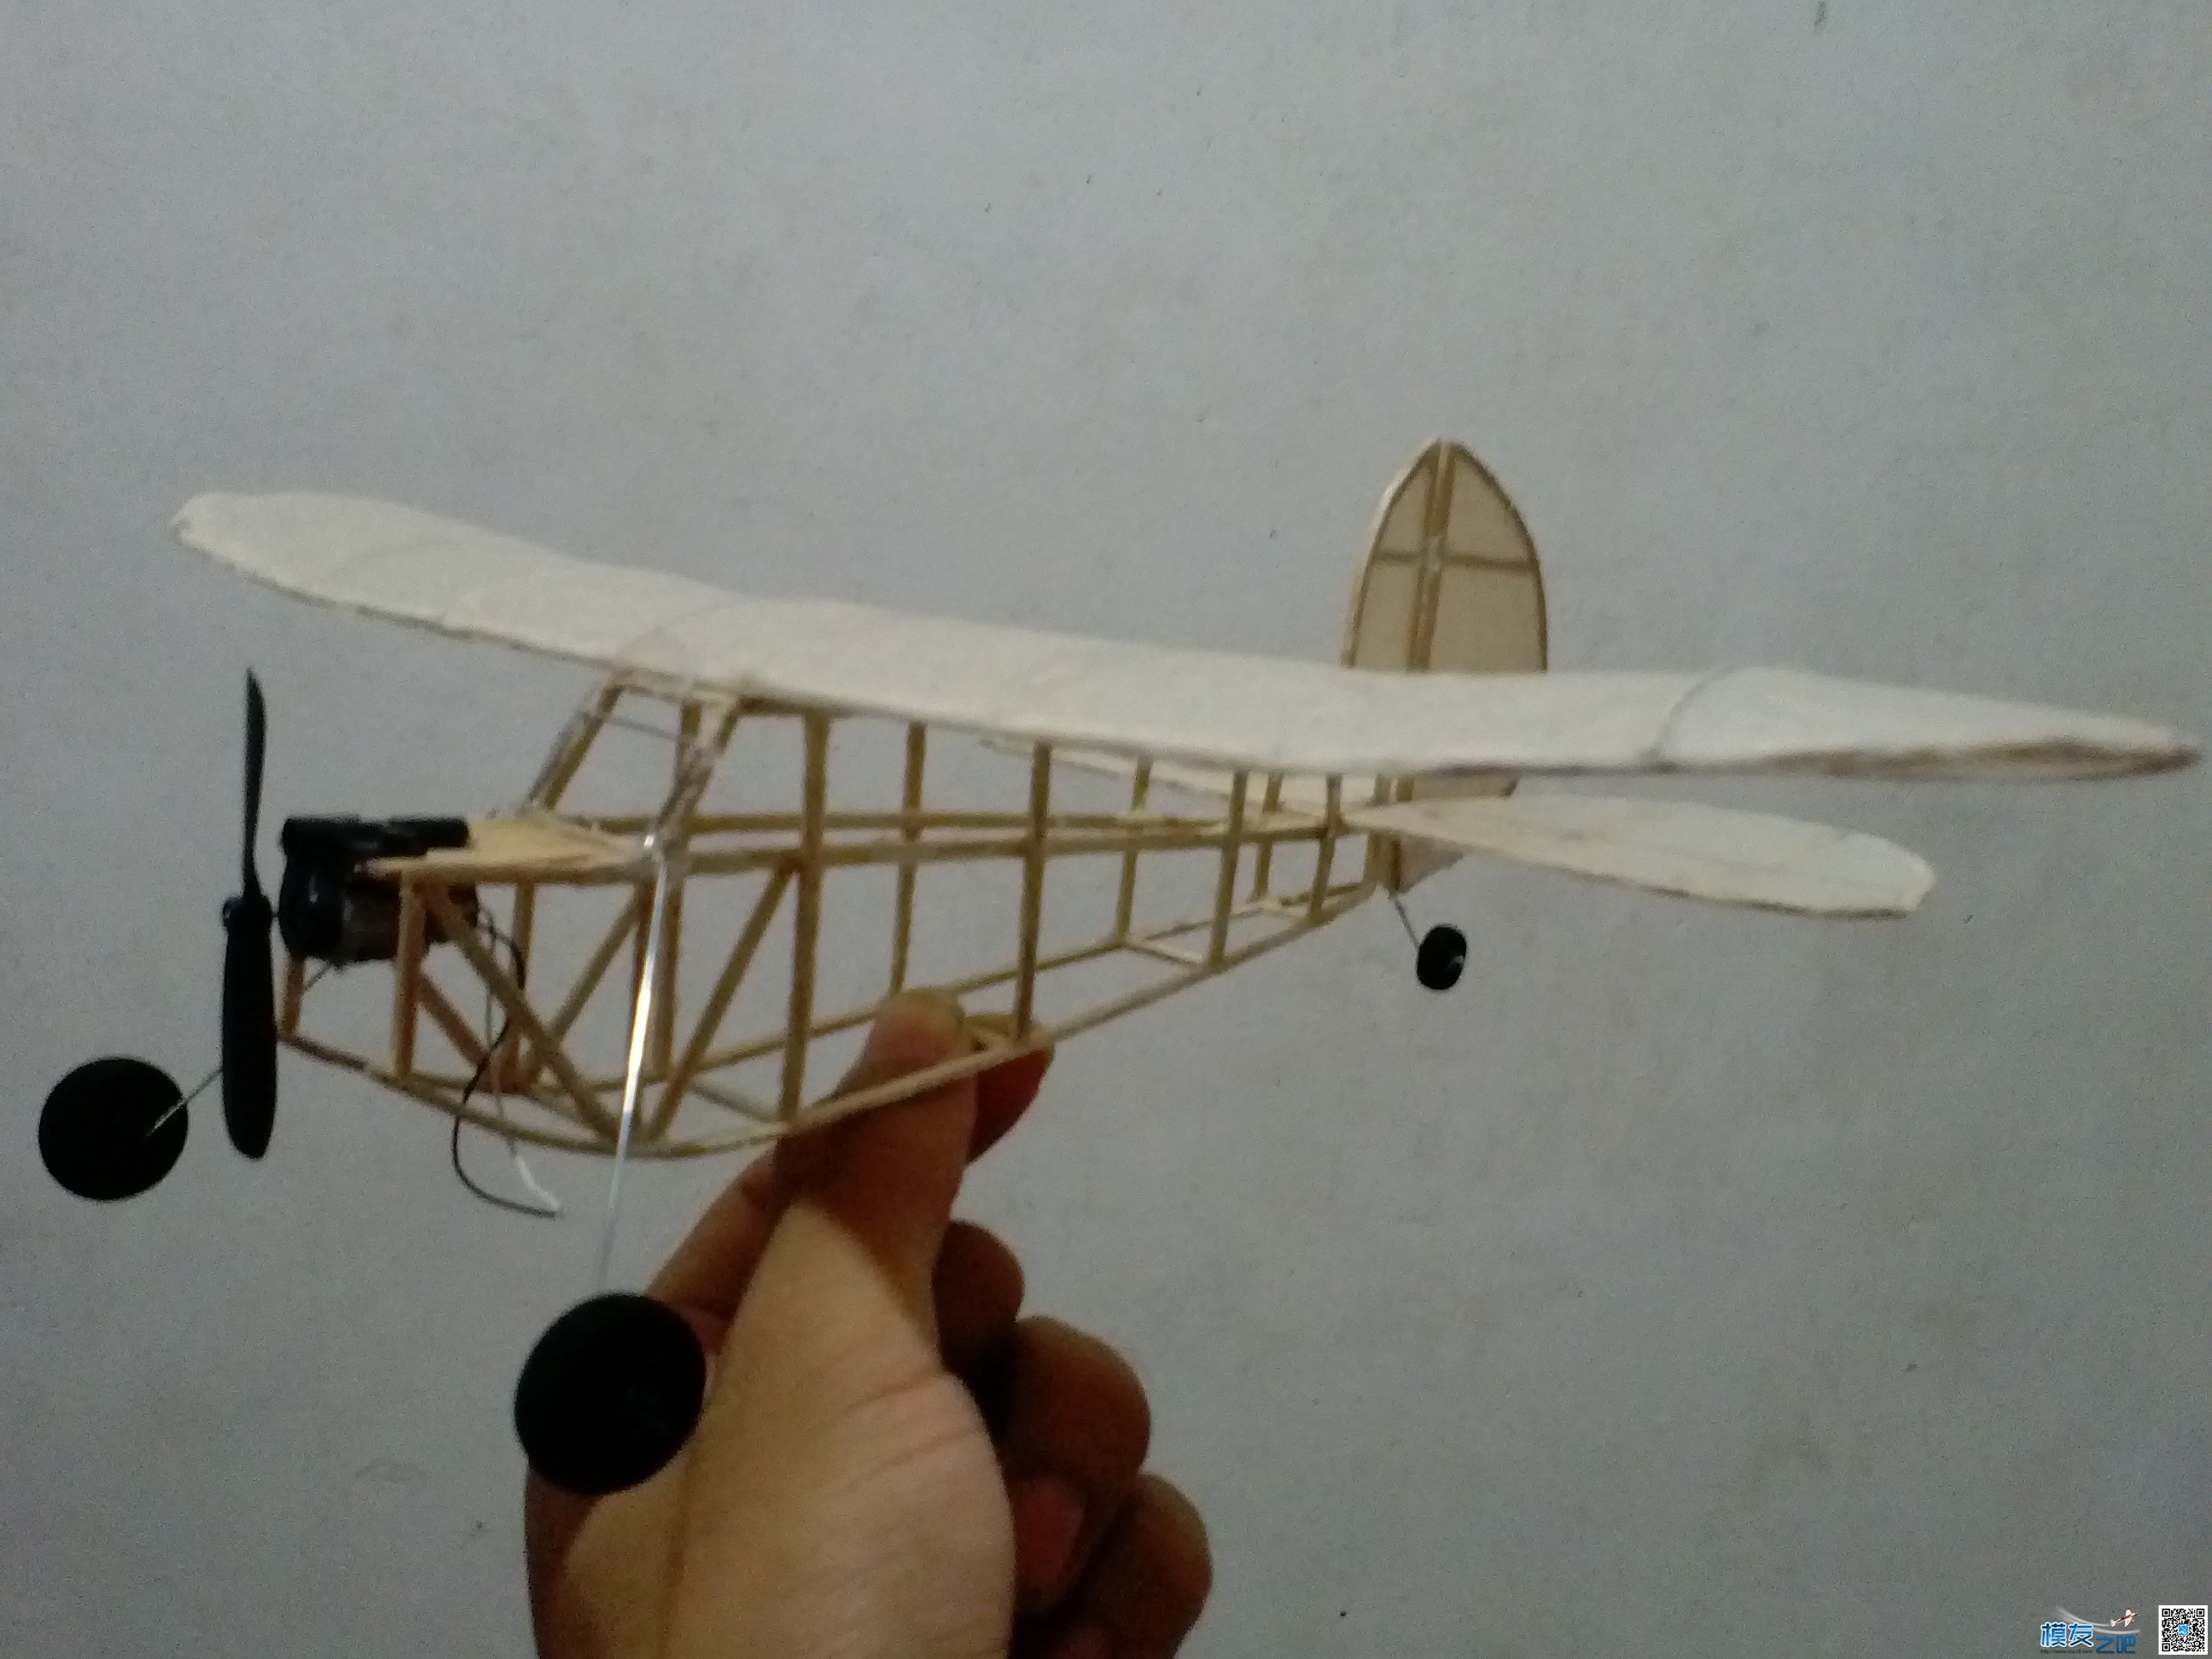 小飞机一枚，第二架300MM翼展小飞机 antonov飞机,各类飞机翼展,飞机翼展分类,飞机翼展长度,飞机翼展比 作者:飞翔的橡皮筋 5414 